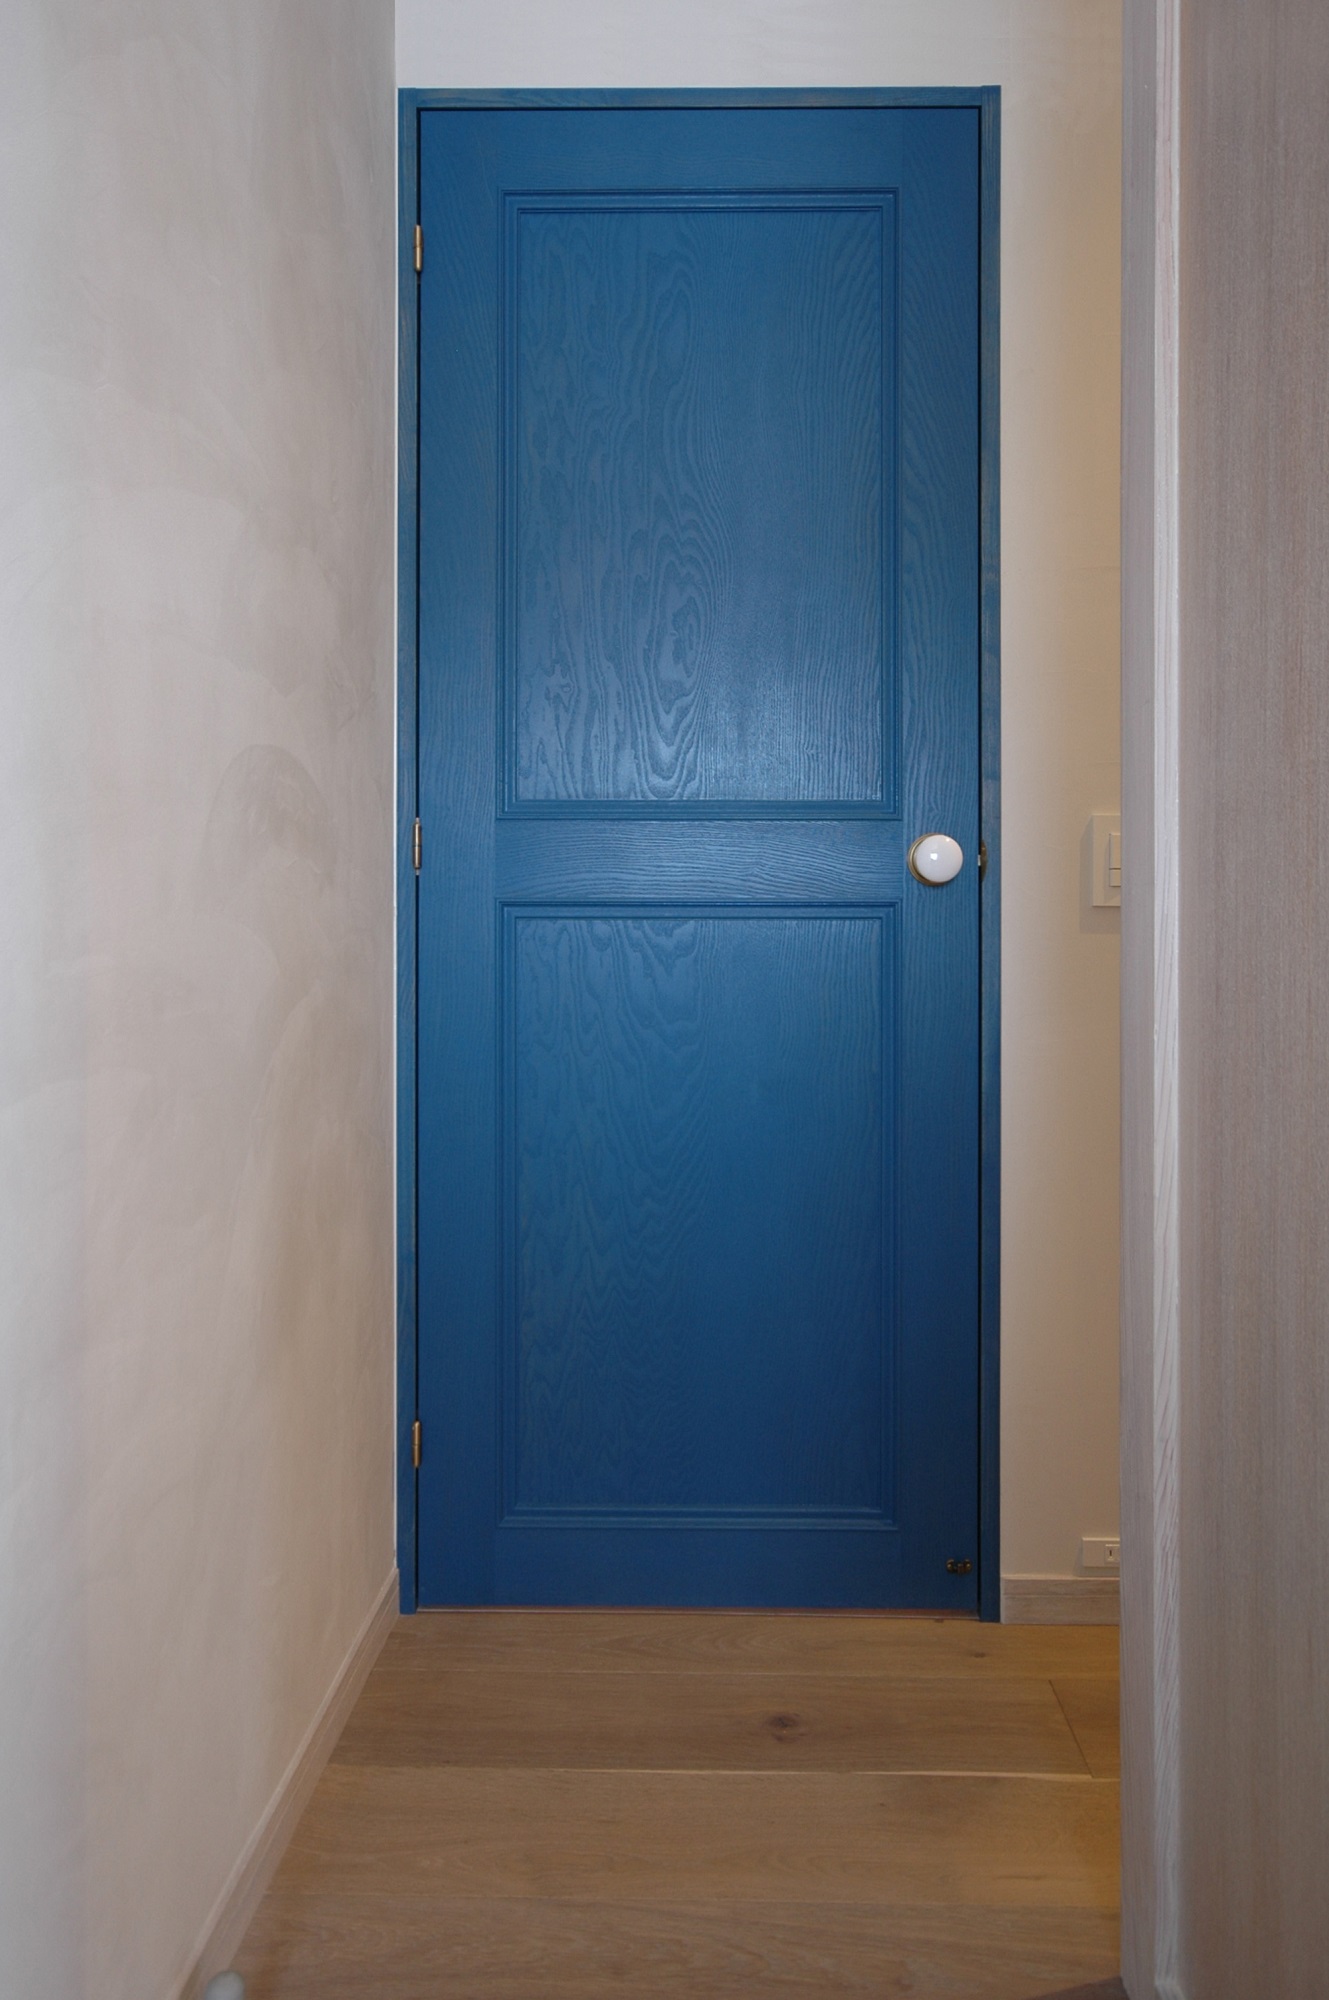 オリジナルのくすんだブルーのドア